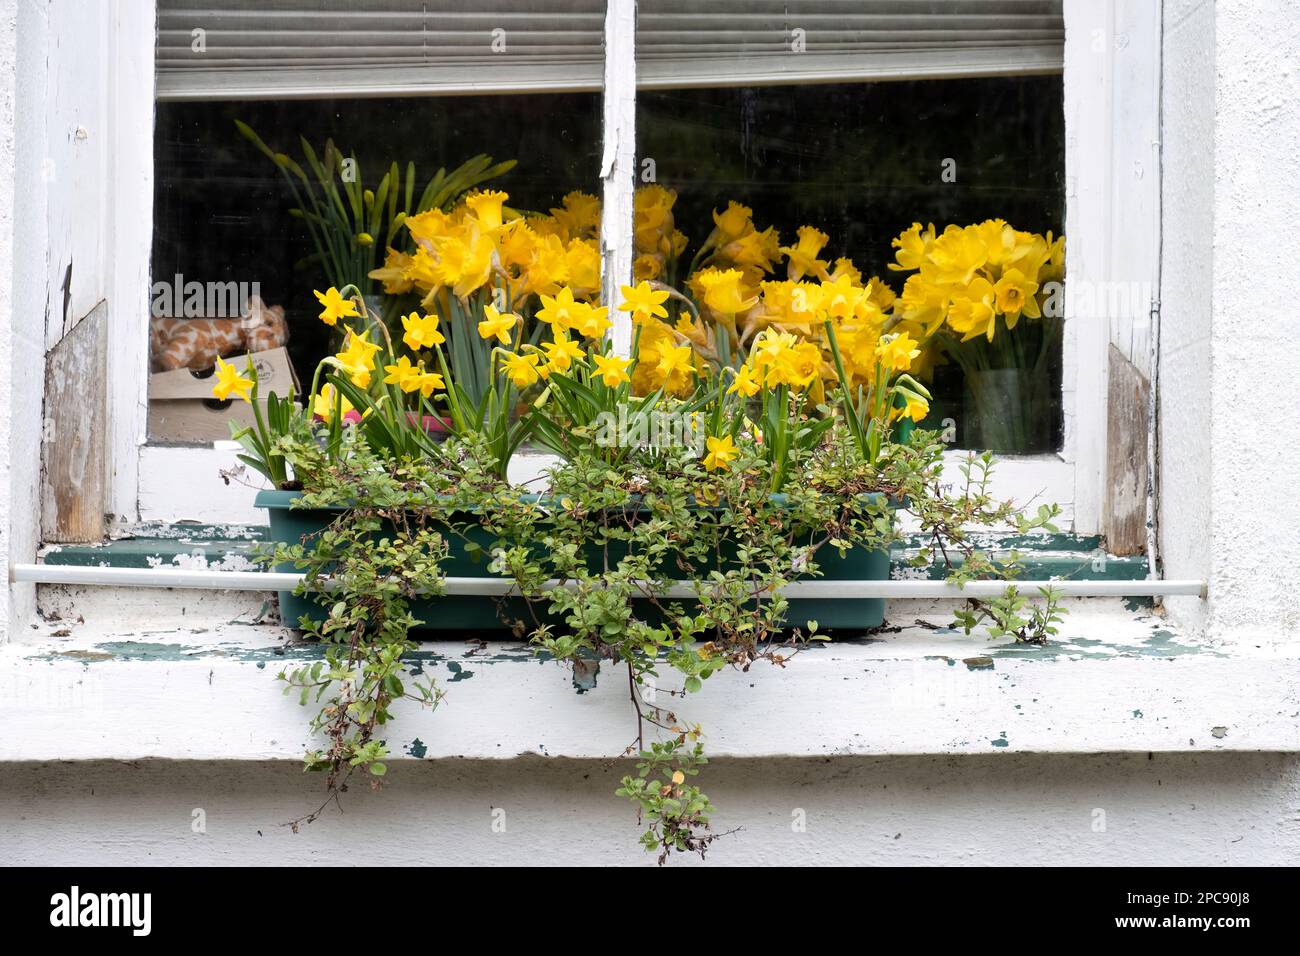 Une boîte à fenêtre sur une saillie de fenêtre de maison à Devon, Royaume-Uni. La boîte est remplie d'une exposition printanière de jonquilles (Narcissus) en pleine floraison avec plus à l'intérieur Banque D'Images